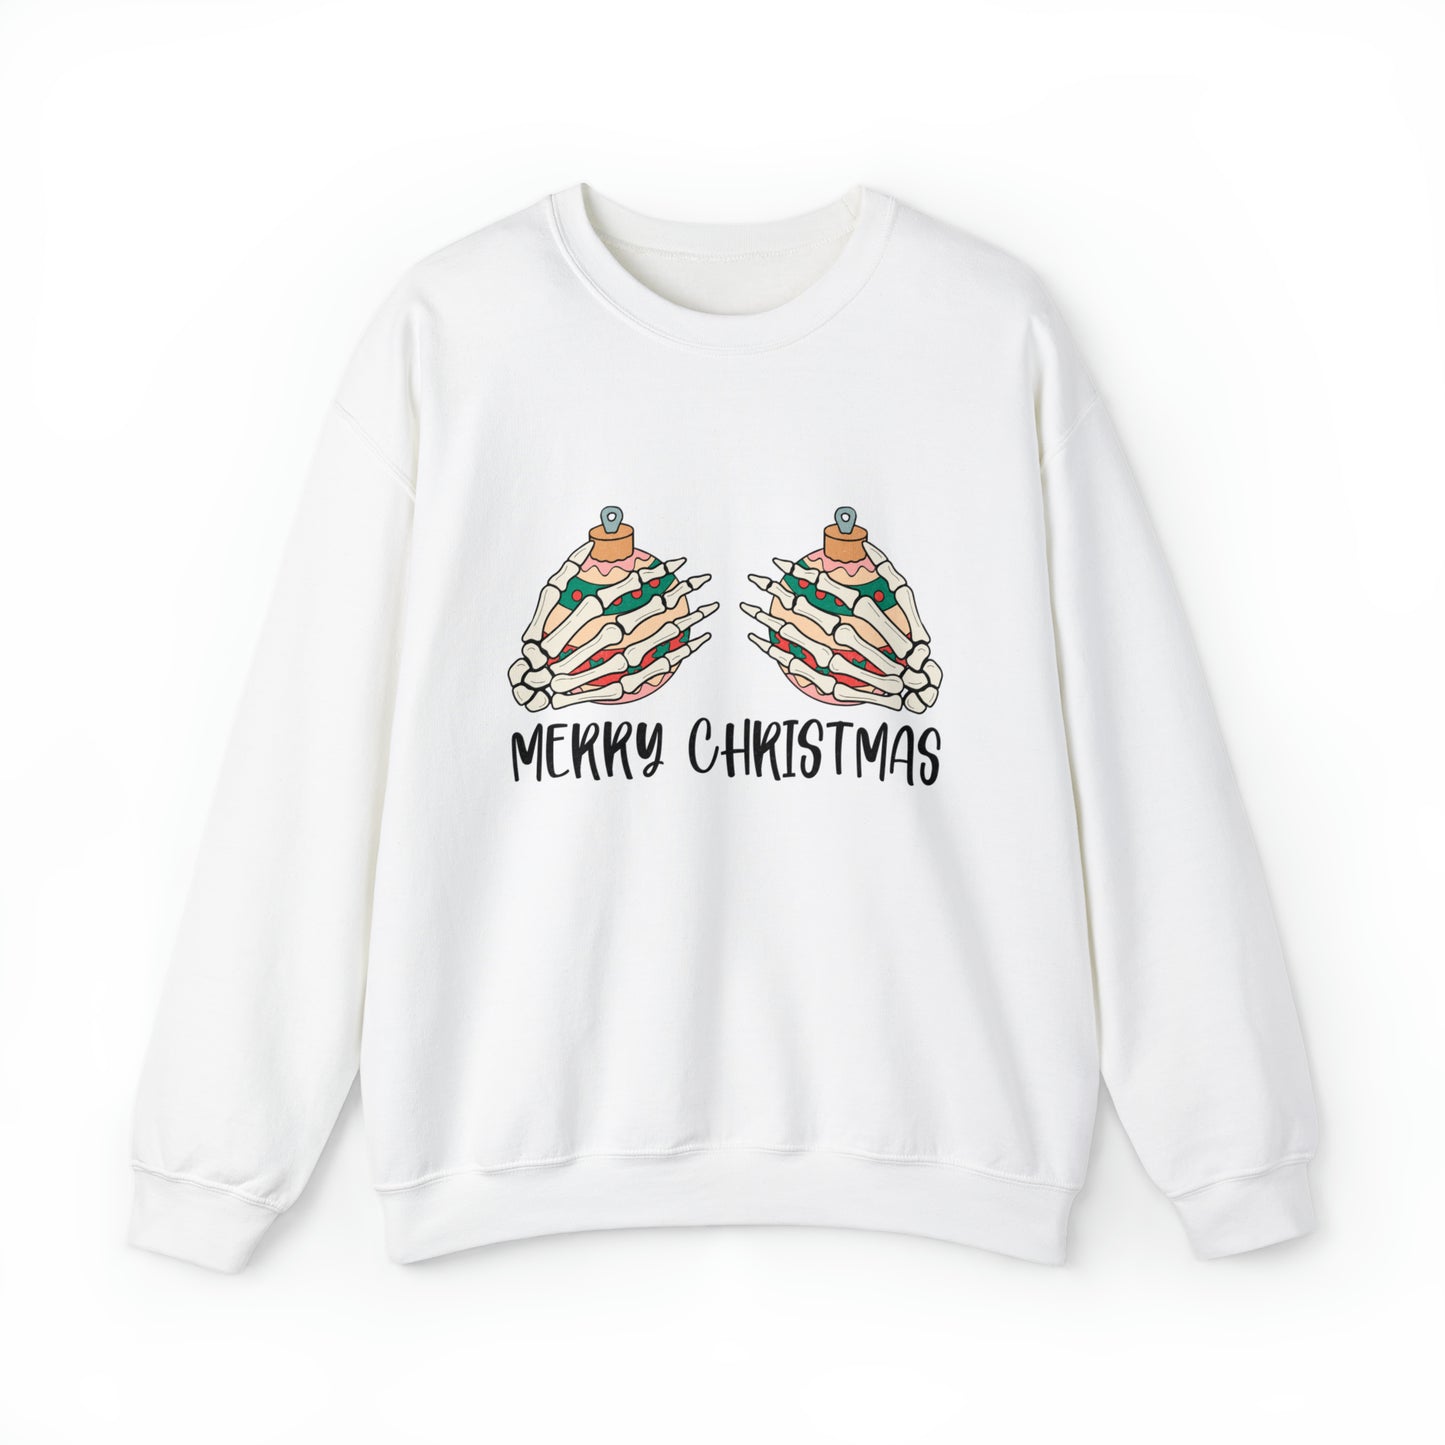 Funny Women's Merry Christmas Sweatshirt